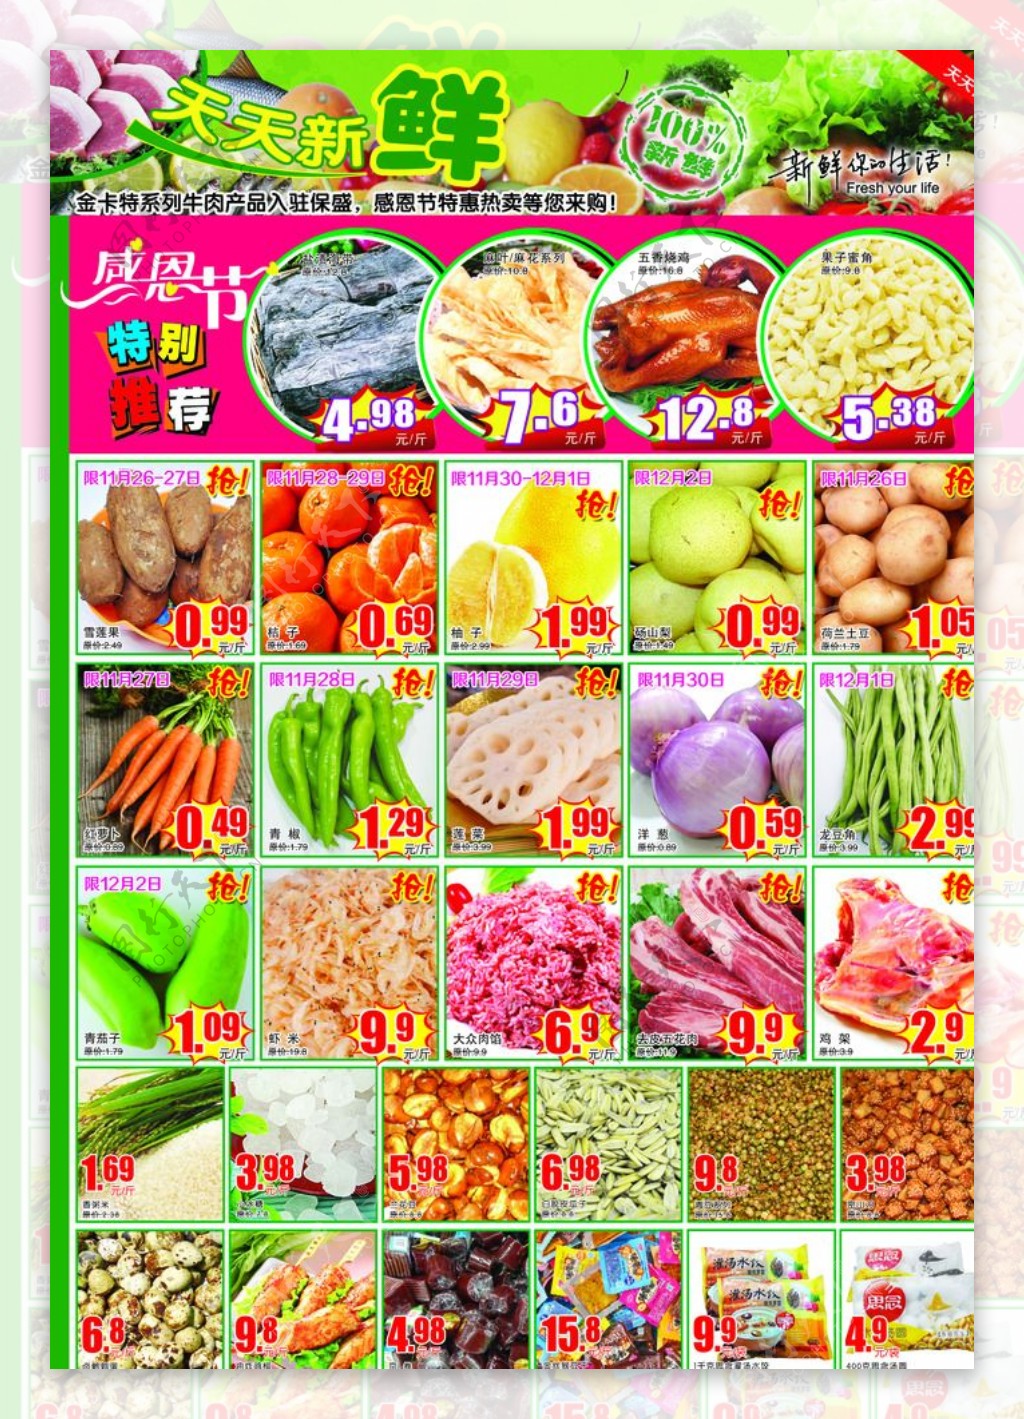 超市生鲜区促销活动彩页DM图片